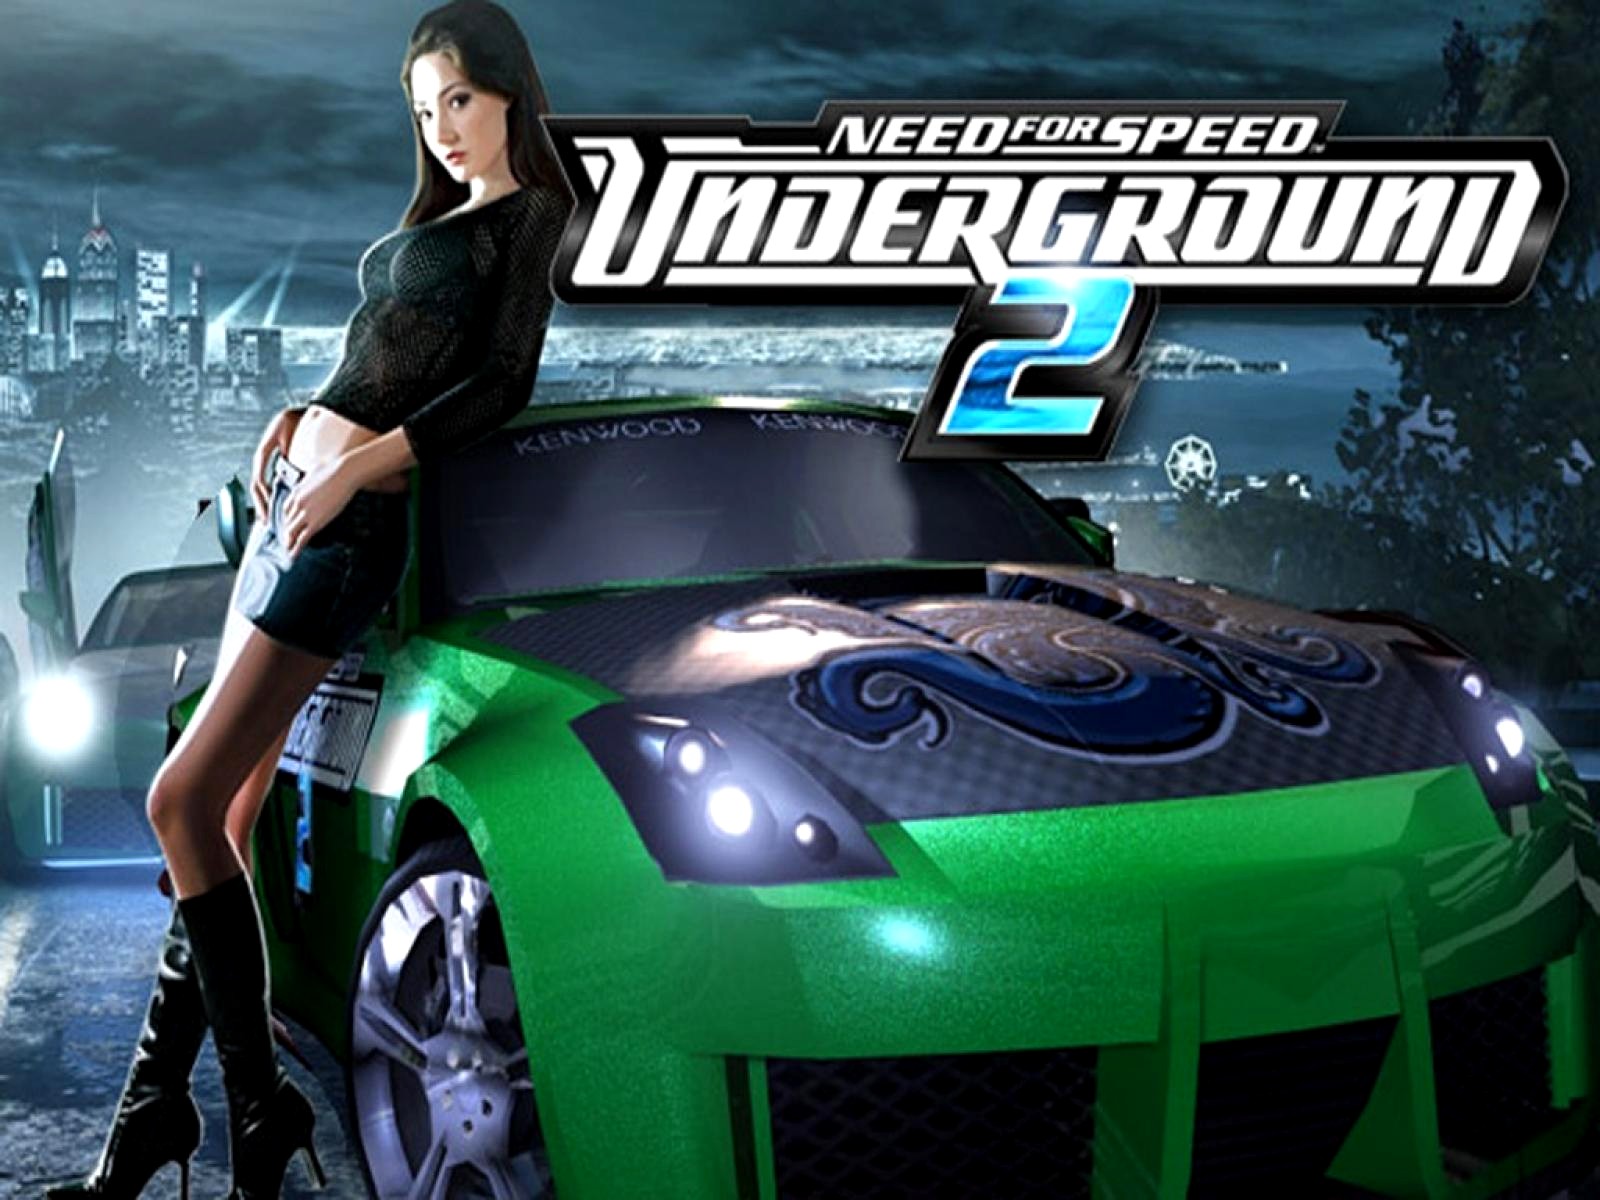 Музыка из игры нид. Нфс андеграунд 2. Need for Speed Underground 2 диск. Нфс андеграунд 2 Постер. Need for Speed Underground 2 ps2.